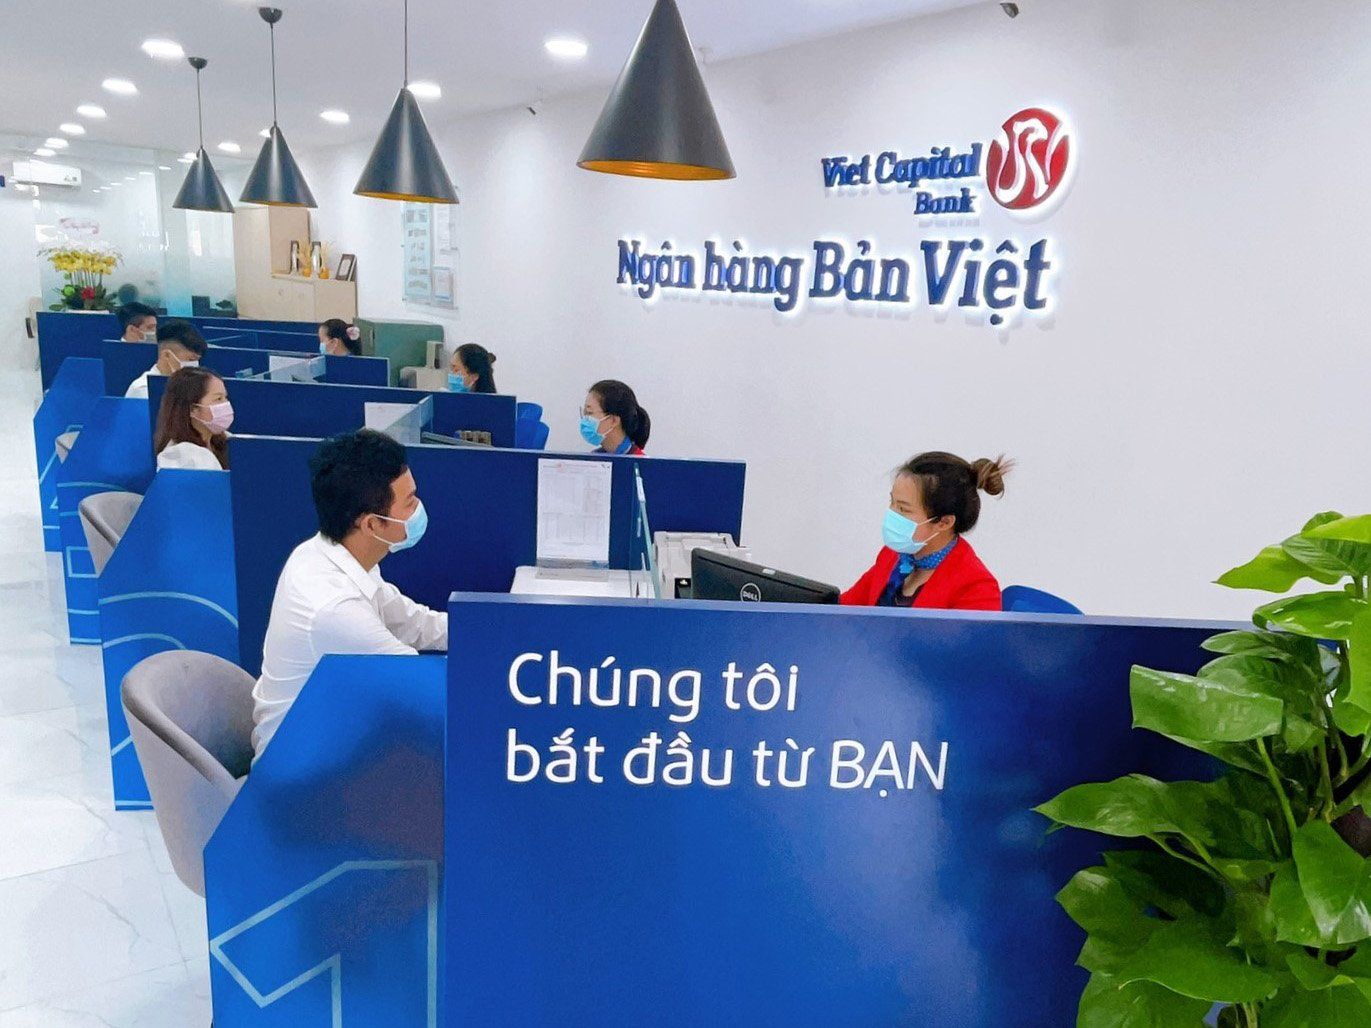 Tăng trưởng bền vững, ngân hàng Bản Việt công bố kết quả kinh doanh 2021 đạt mục tiêu đặt ra